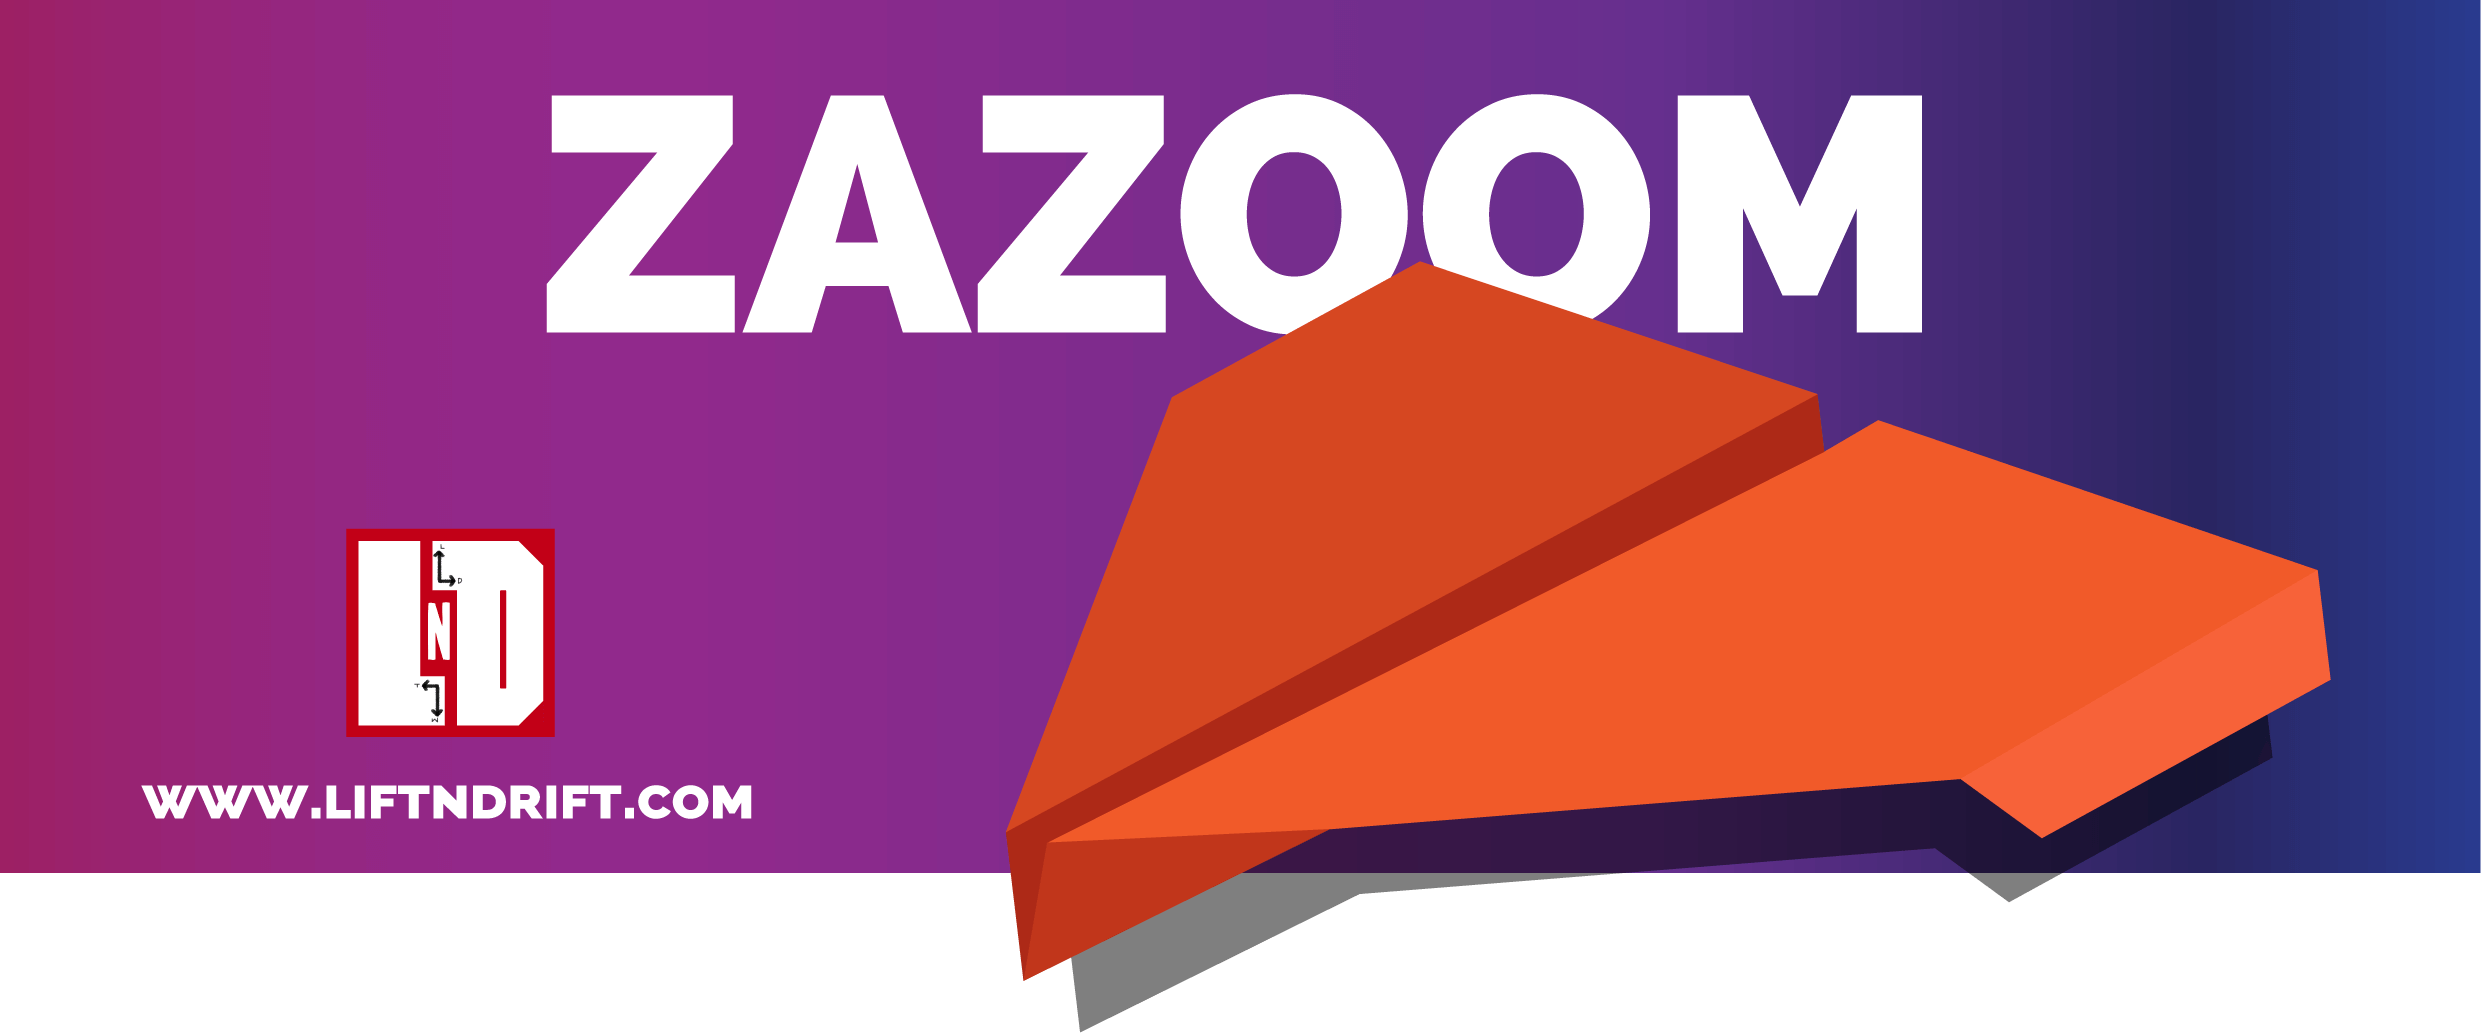 Zazoom | Learn how to make a Zazoom Paper Airplane design!